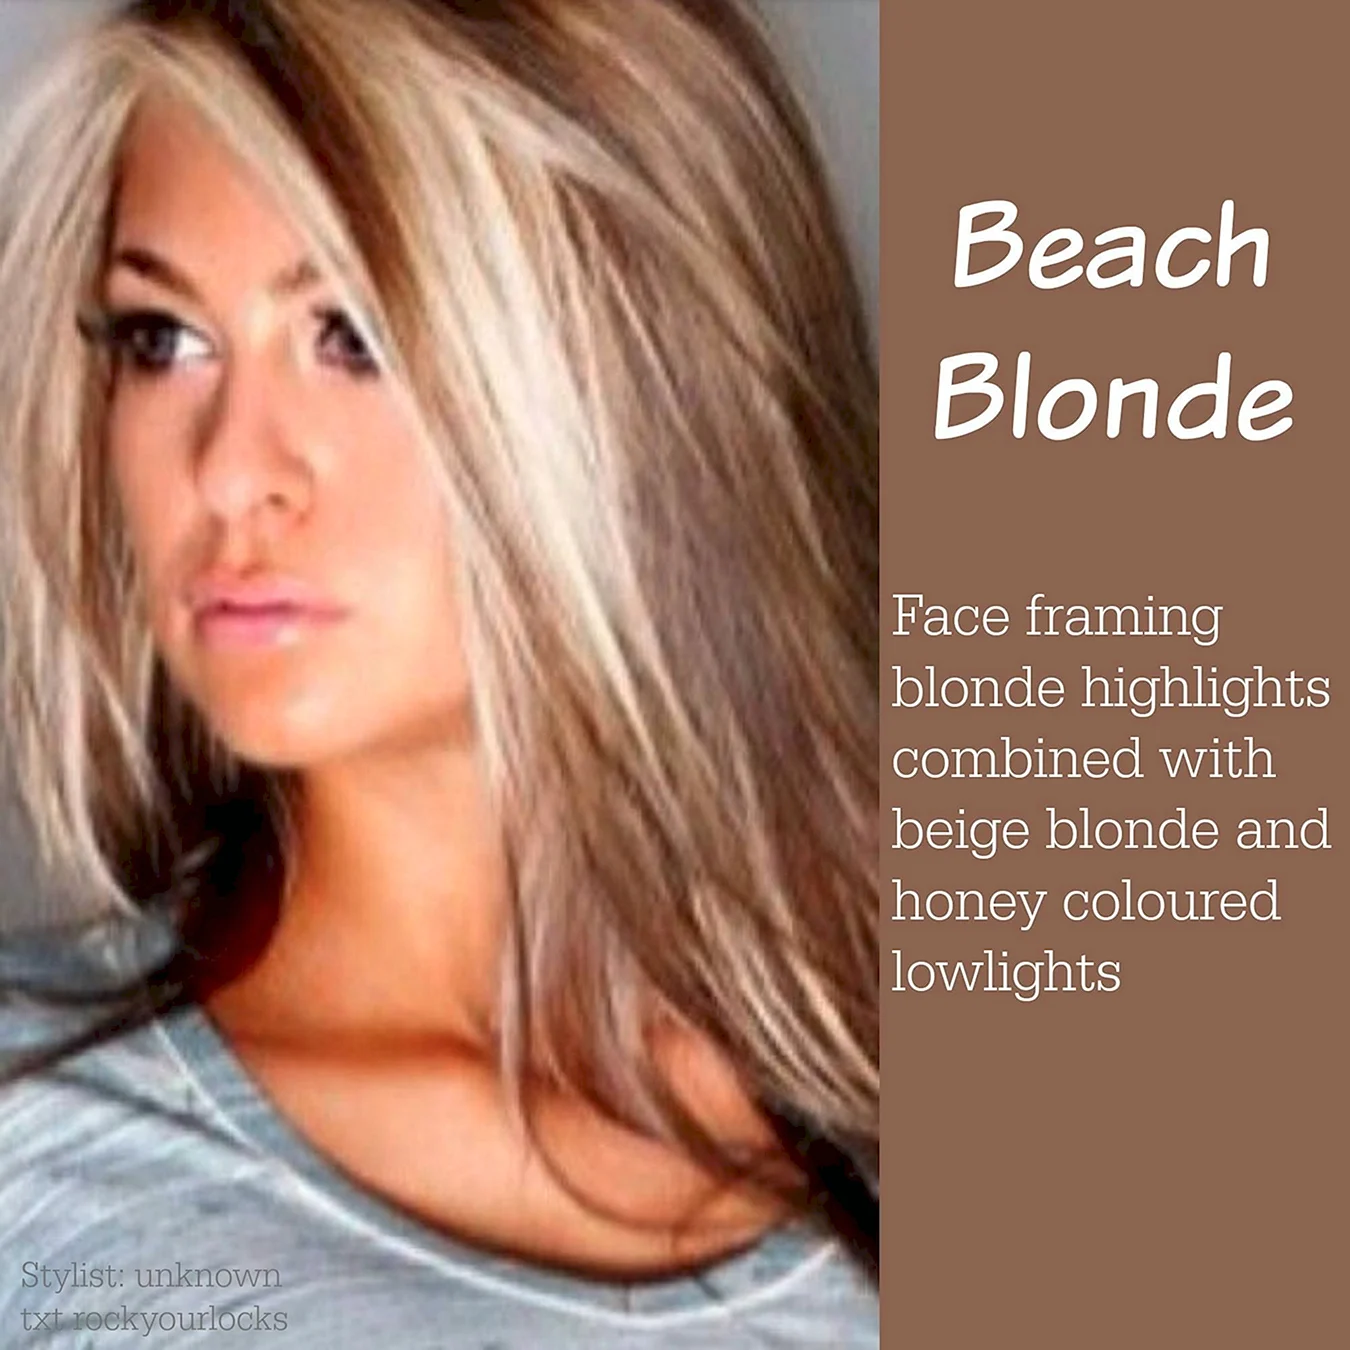 Блонд с черными прядями у лица